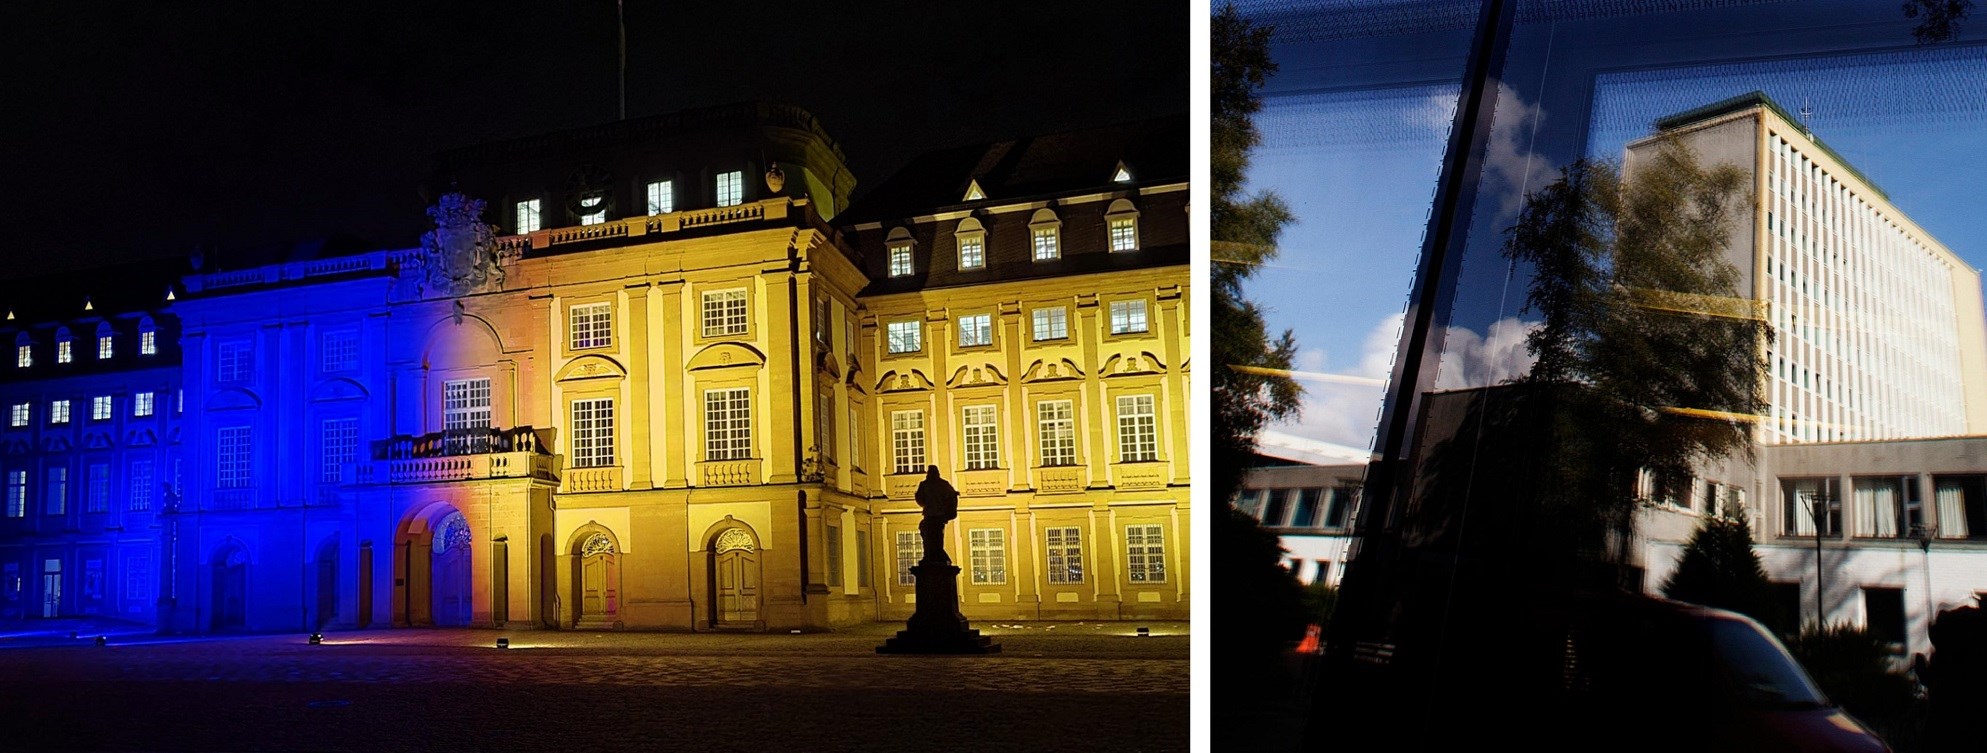 Mannheim palace og NHH